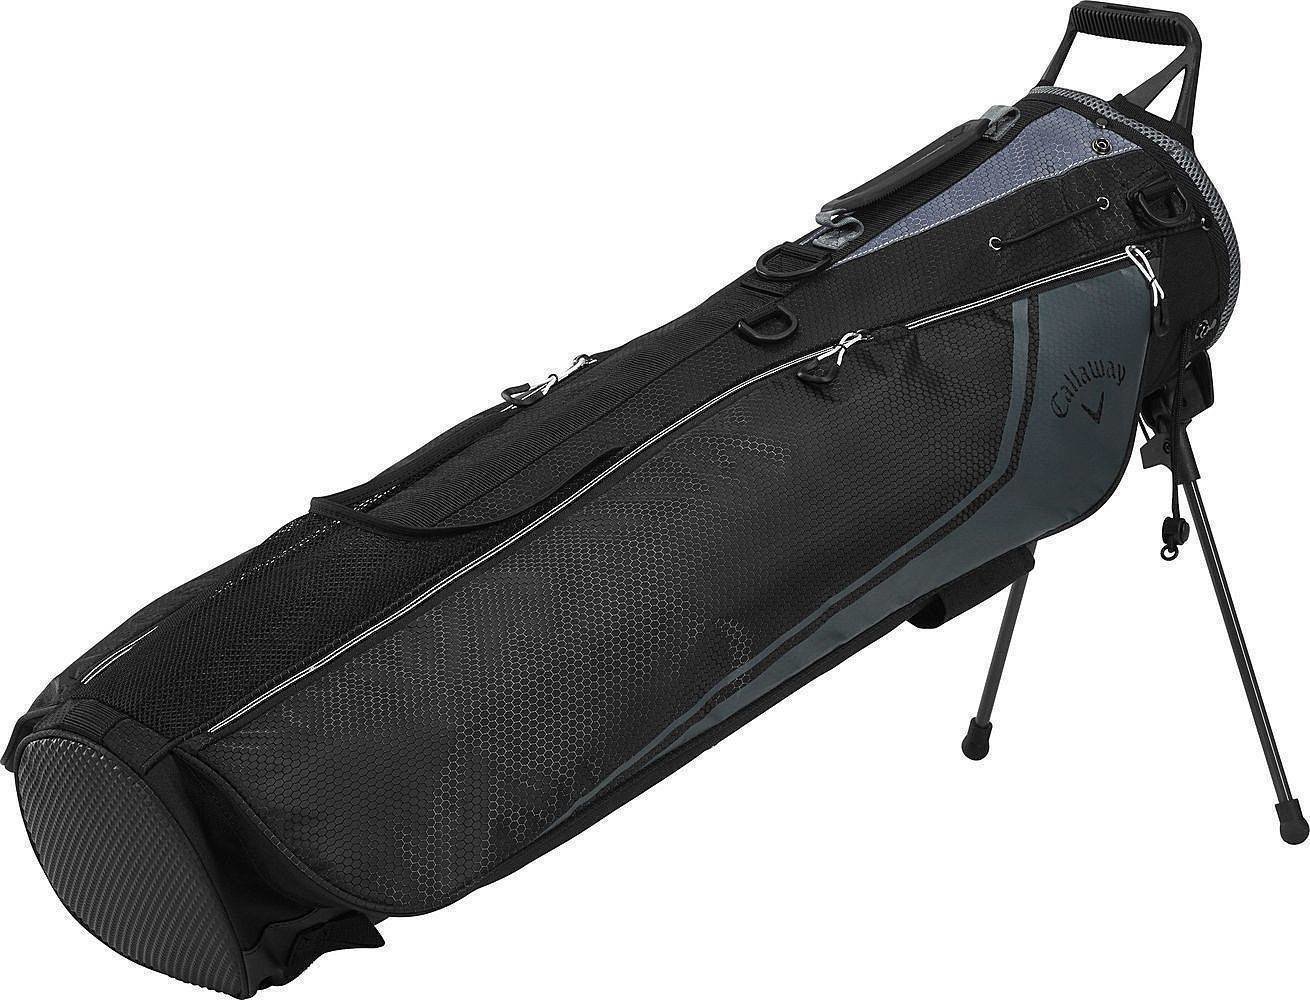 Saco de golfe Callaway Carry+ Black/Charcoal/White Saco de golfe